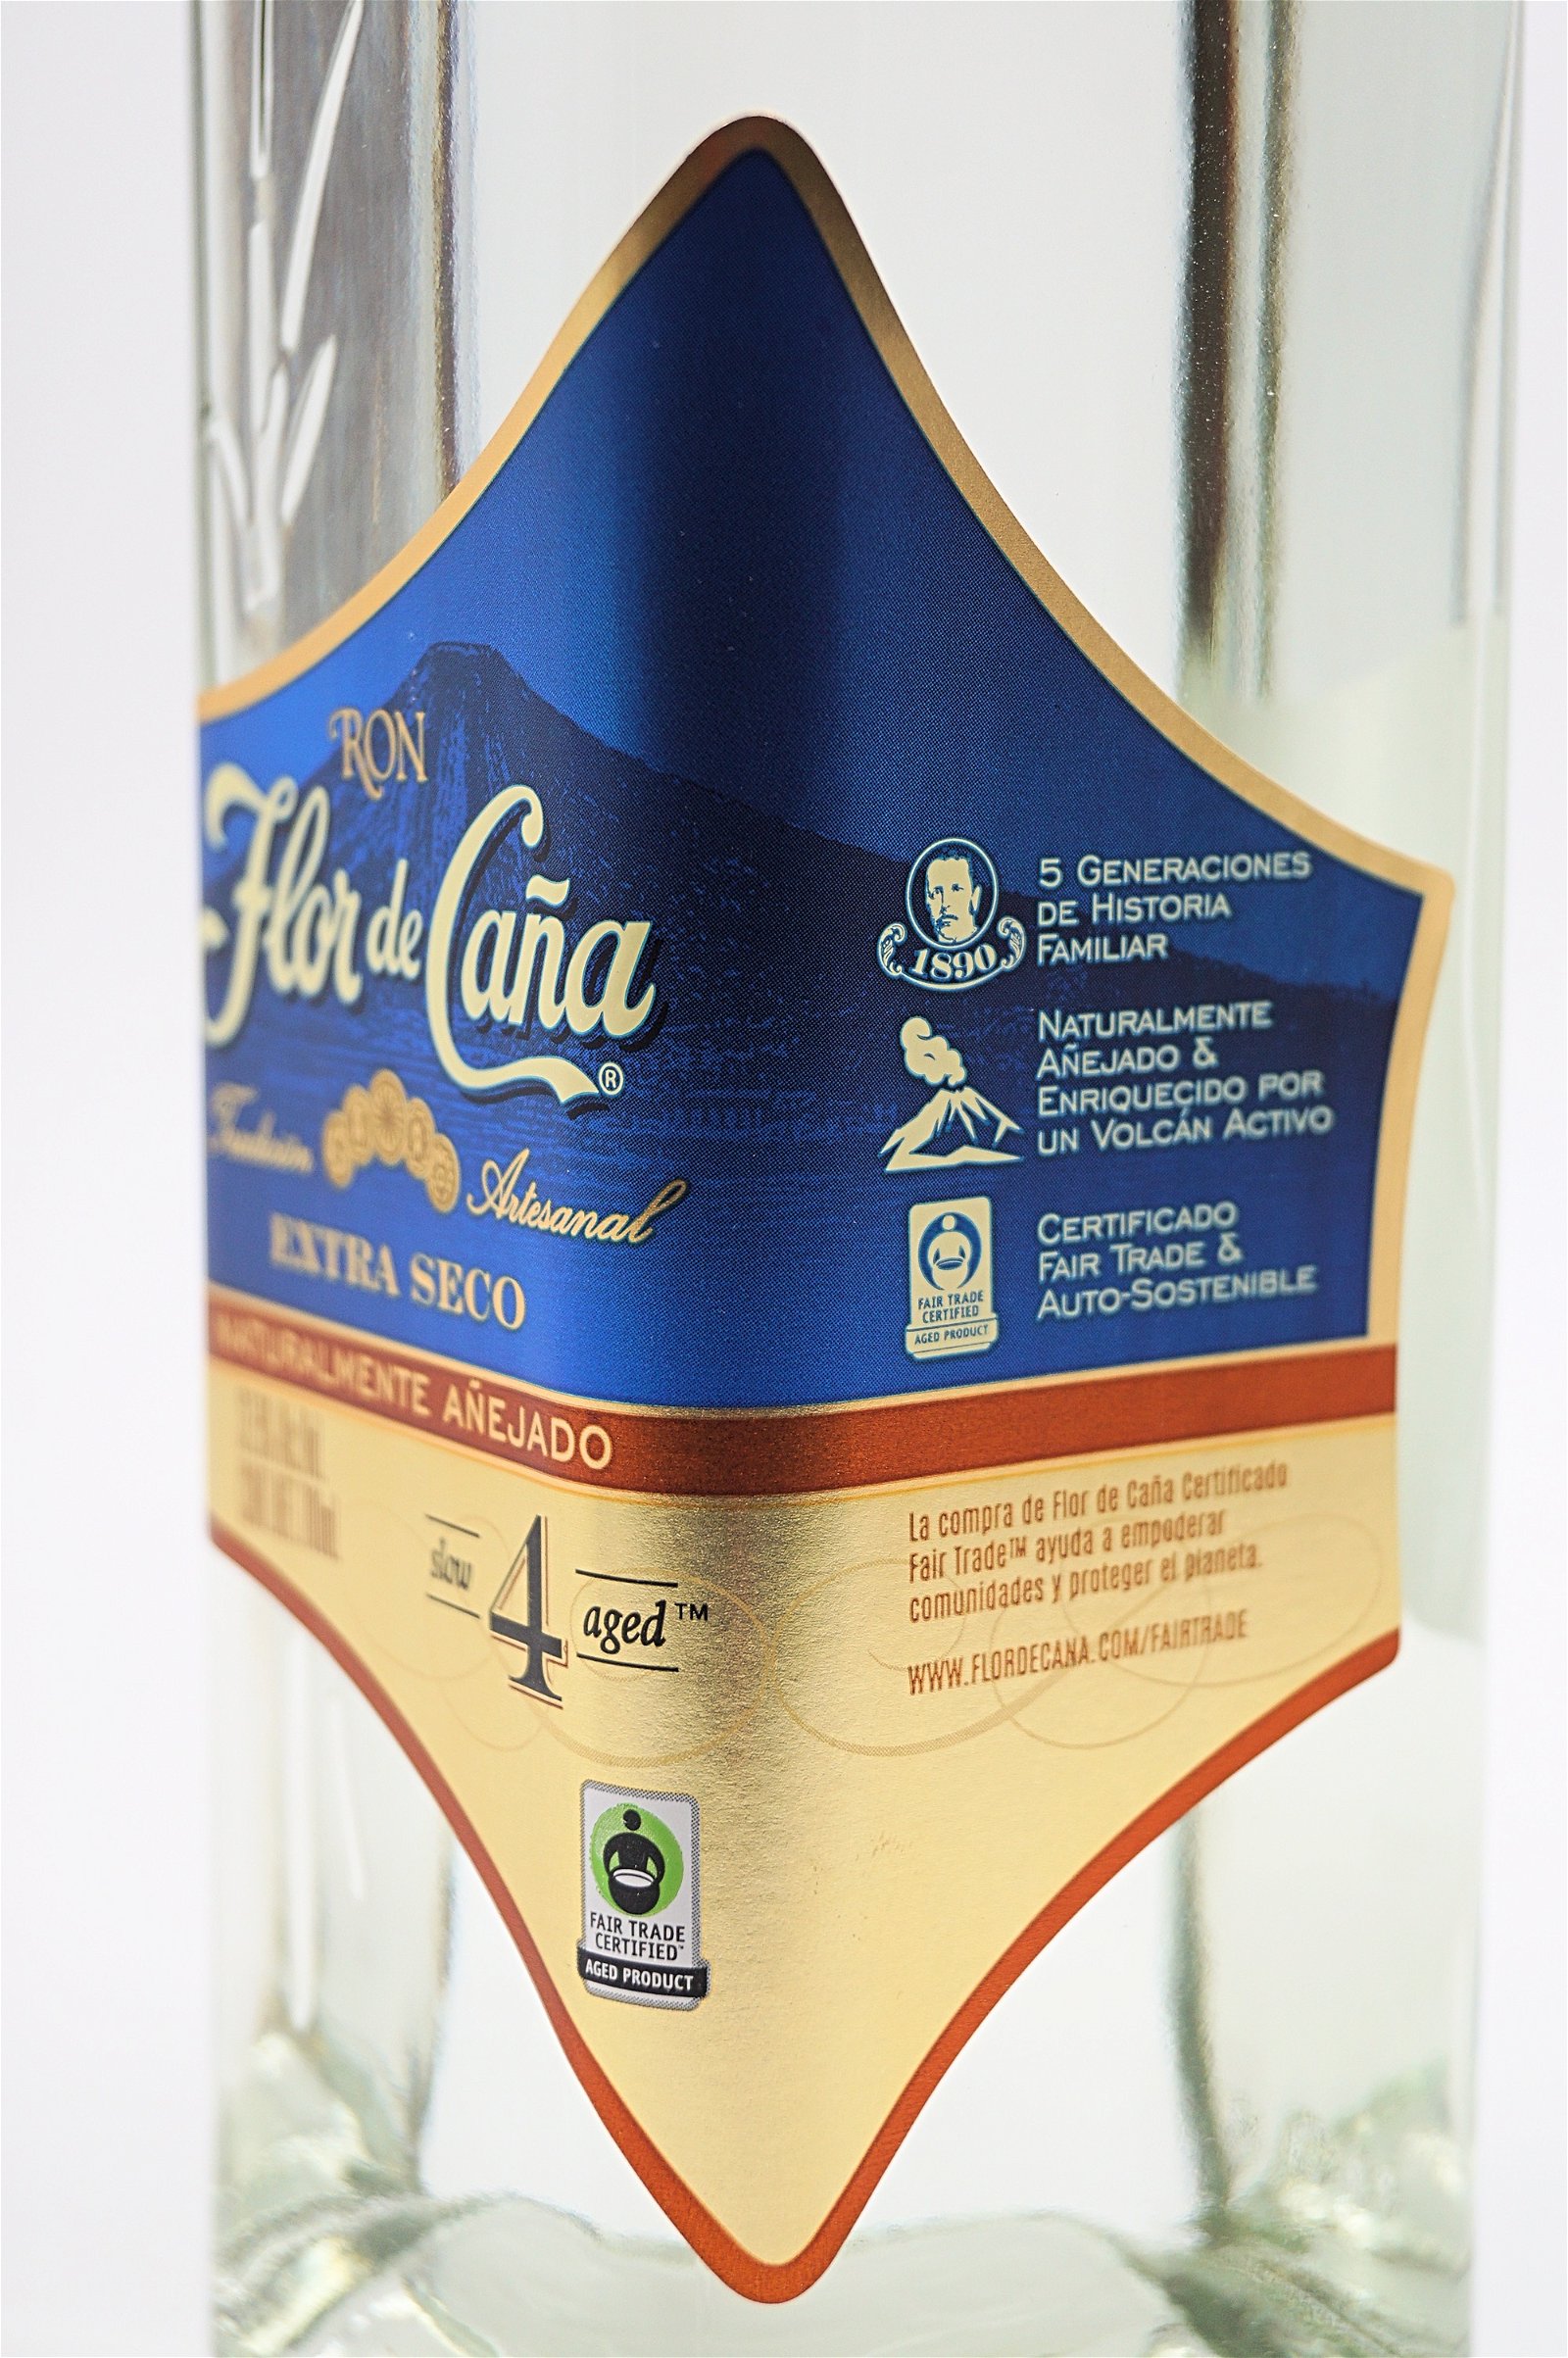 Flor de Cana 4 Jahre White Extra Seco Rum